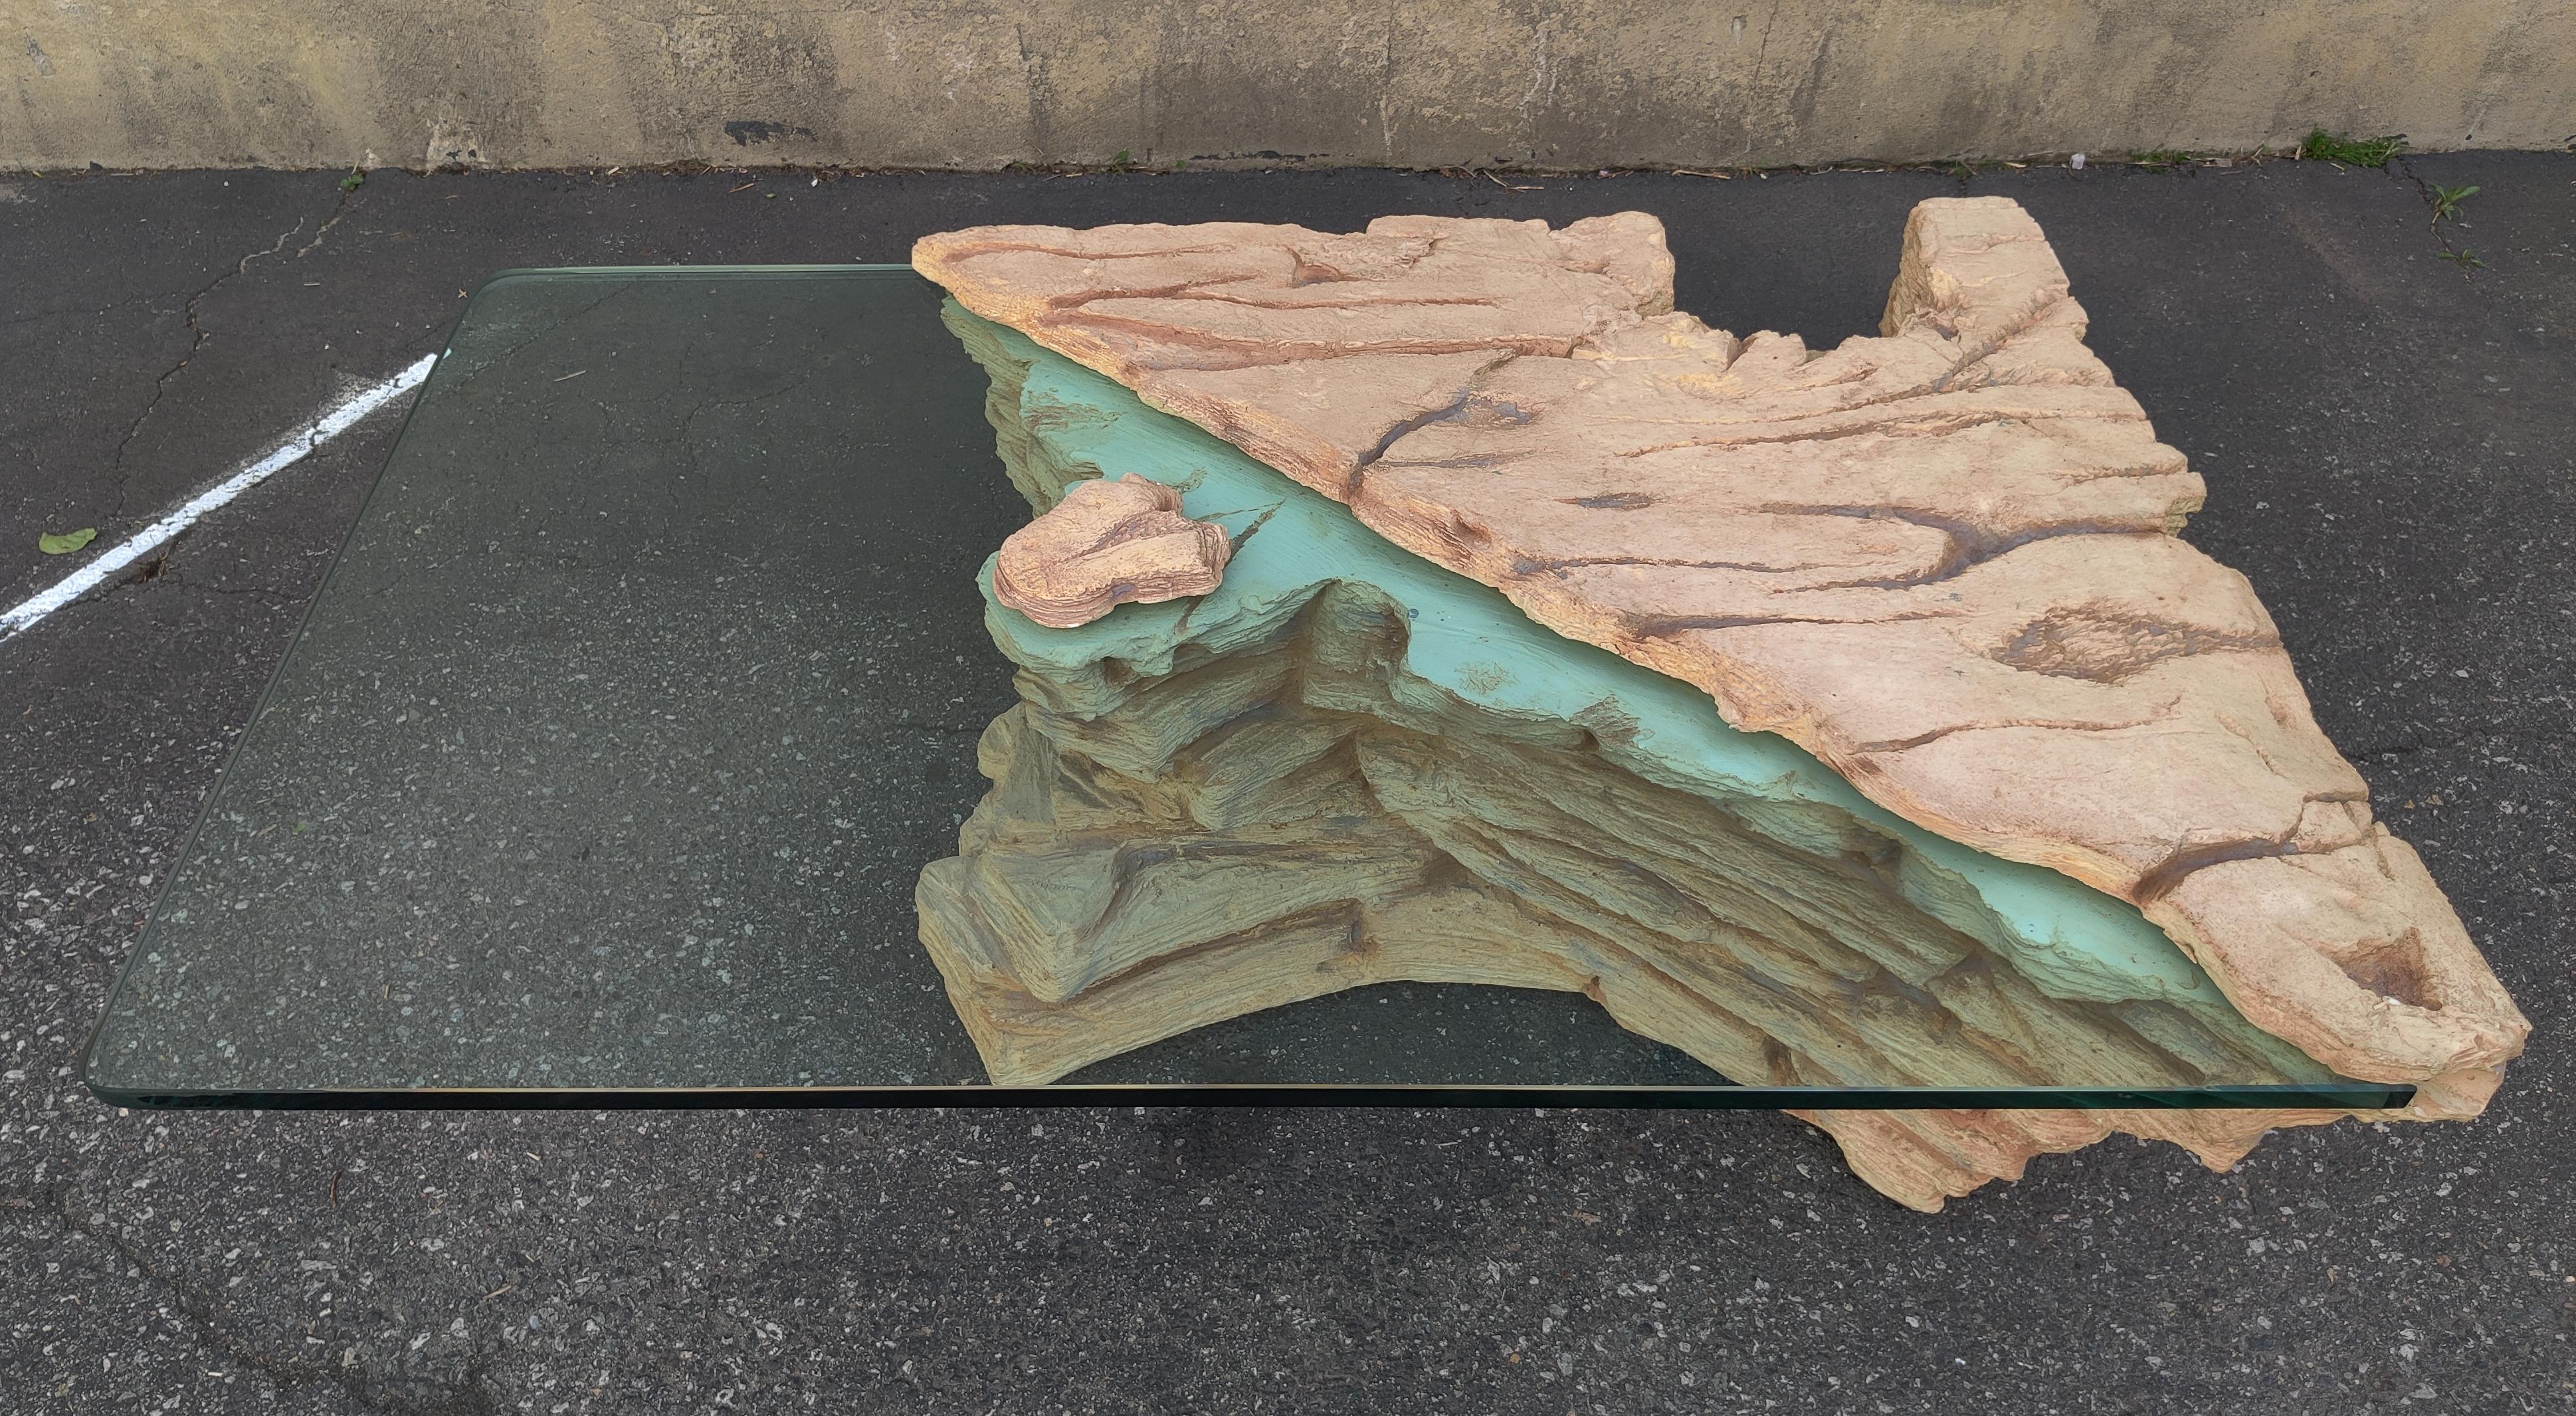 Table basse 'Rock Quarry' de Sirmos attribution. Fabriqué aux États-Unis vers les années 1970. Le plateau en verre d'une épaisseur de 3/4 de pouce s'insère de façon invisible dans une rainure du corps de la base et est maintenu par une pierre qui